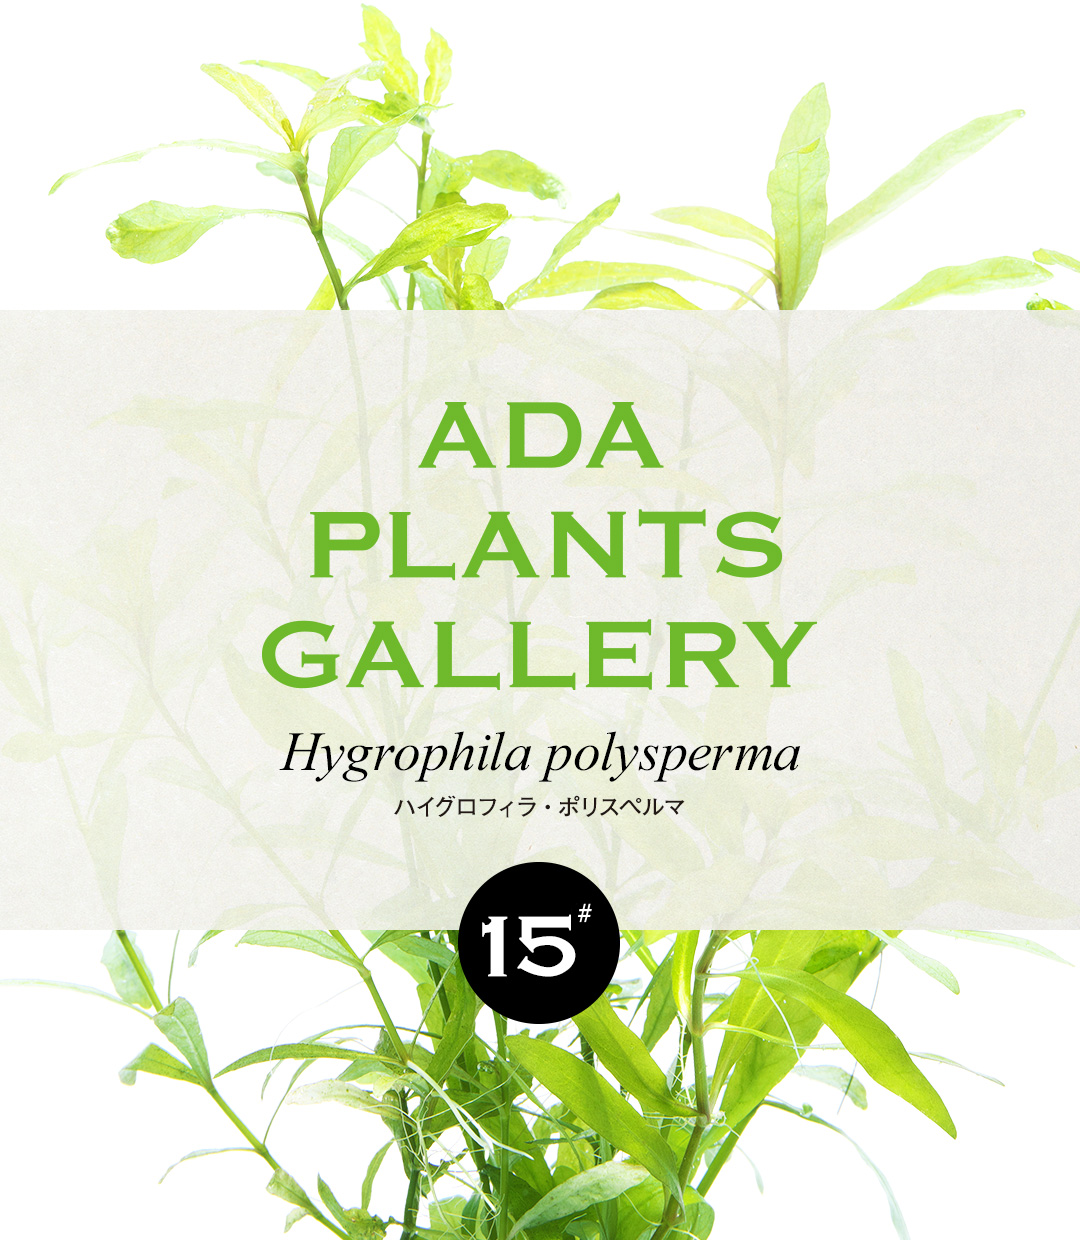 ADA PLANTS GALLERY #15「ハイグロフィラ・ポリスペルマ」